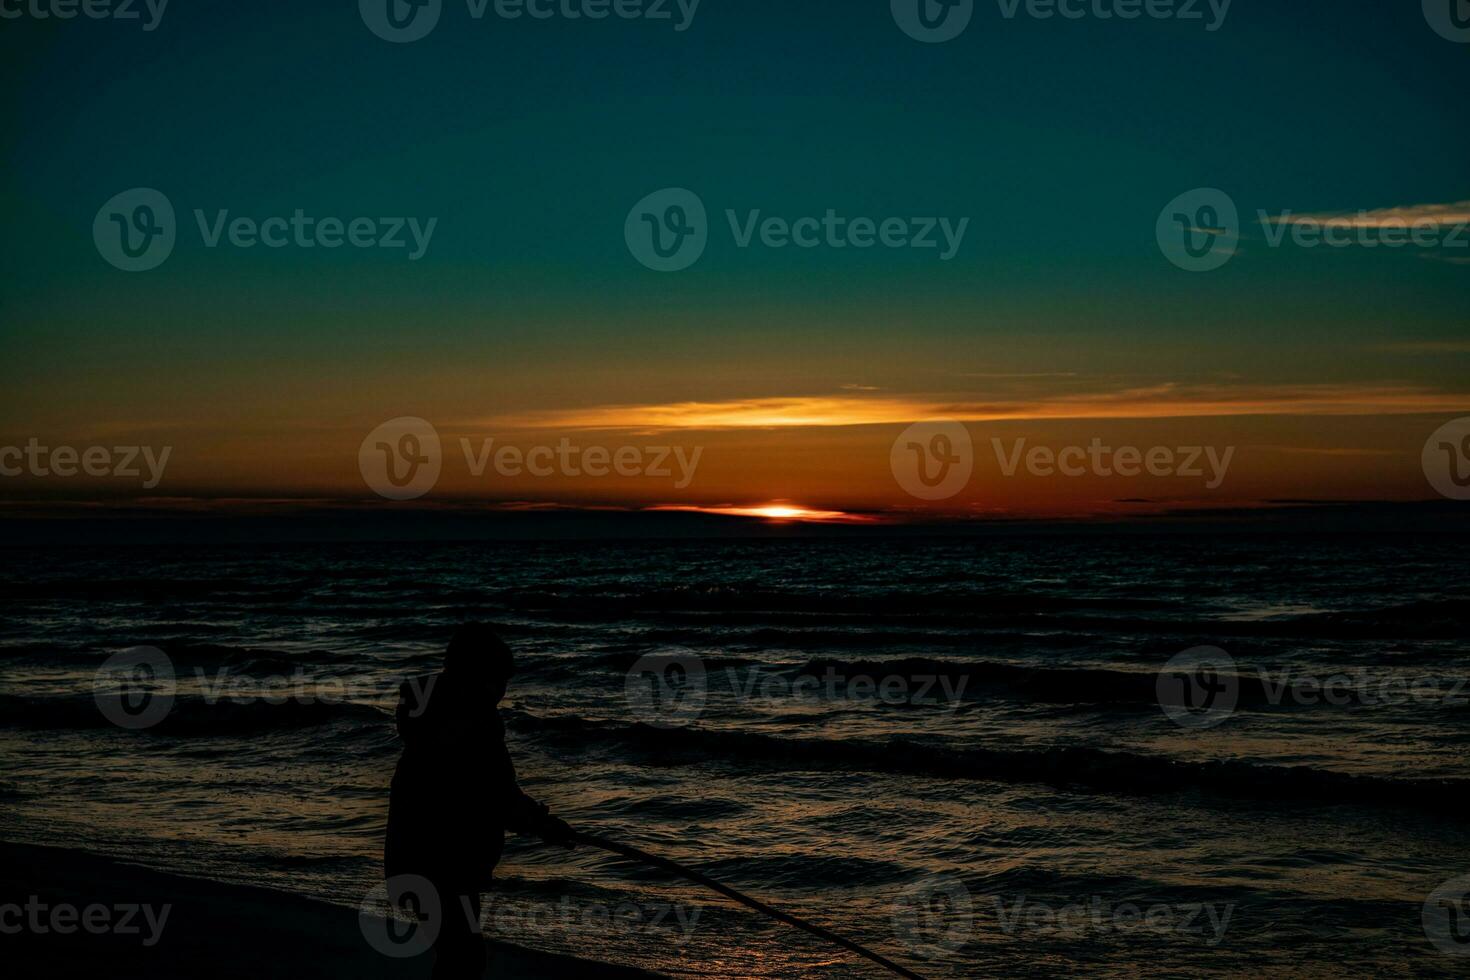 pintoresco calma puesta de sol con vistoso nubes en el costas de el báltico mar en Polonia foto